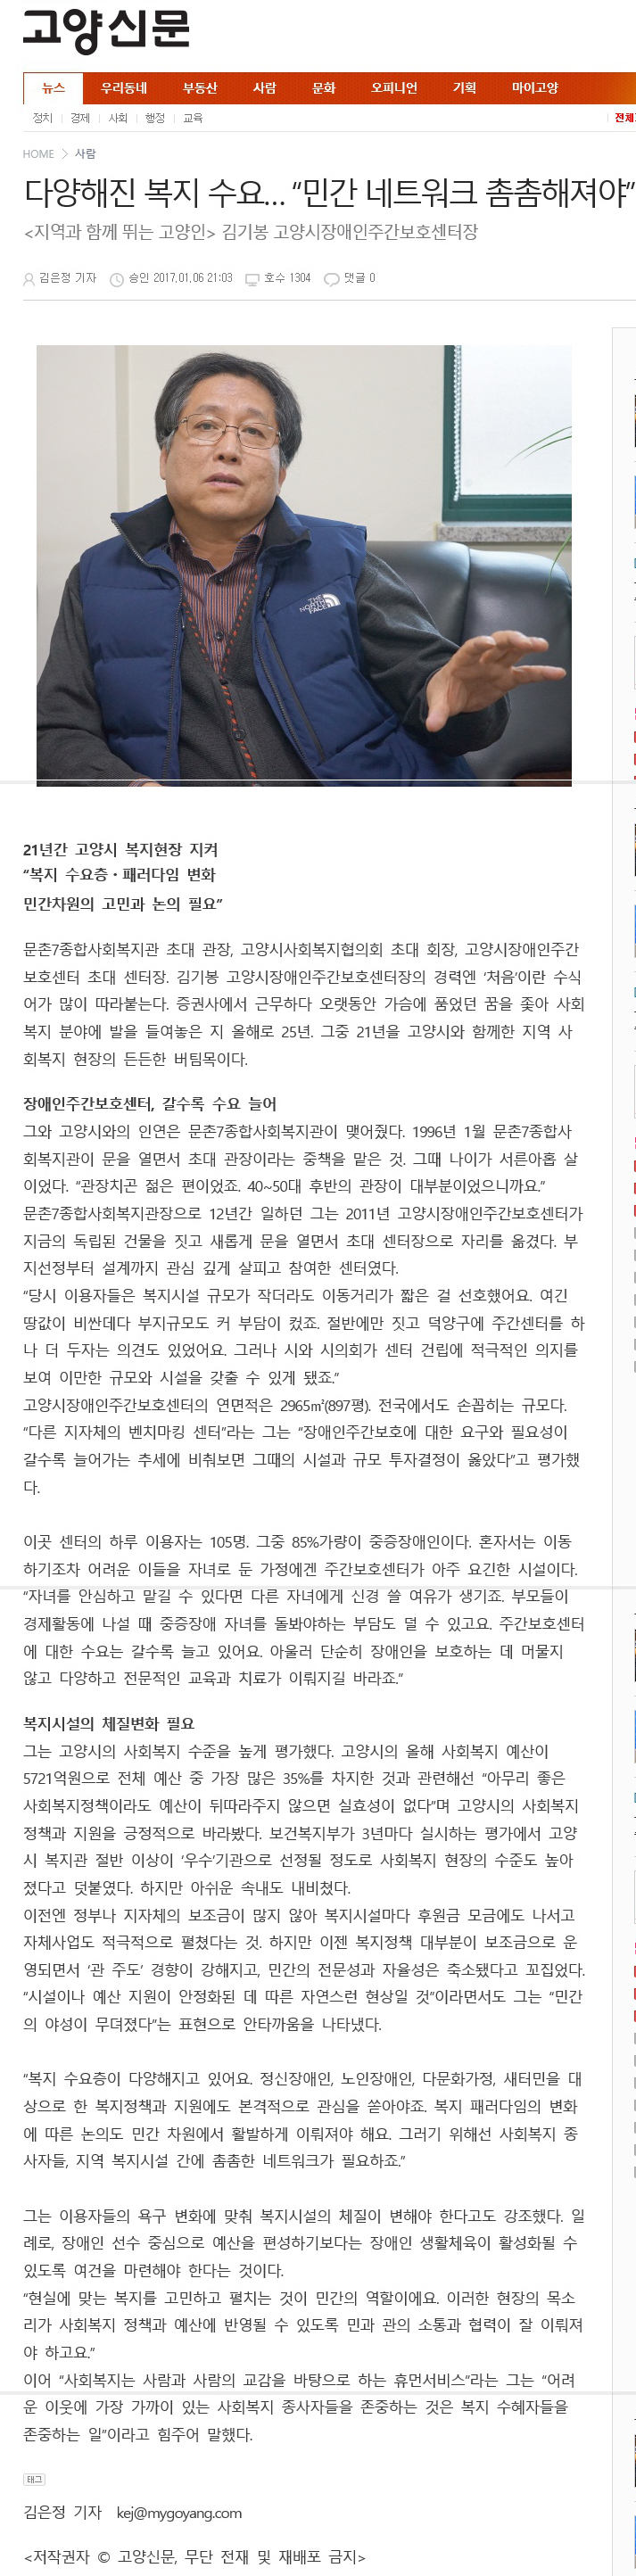 20170106_다양해진 복지 수요 “민간 네트워크 촘촘해져야”(고양신문).jpg